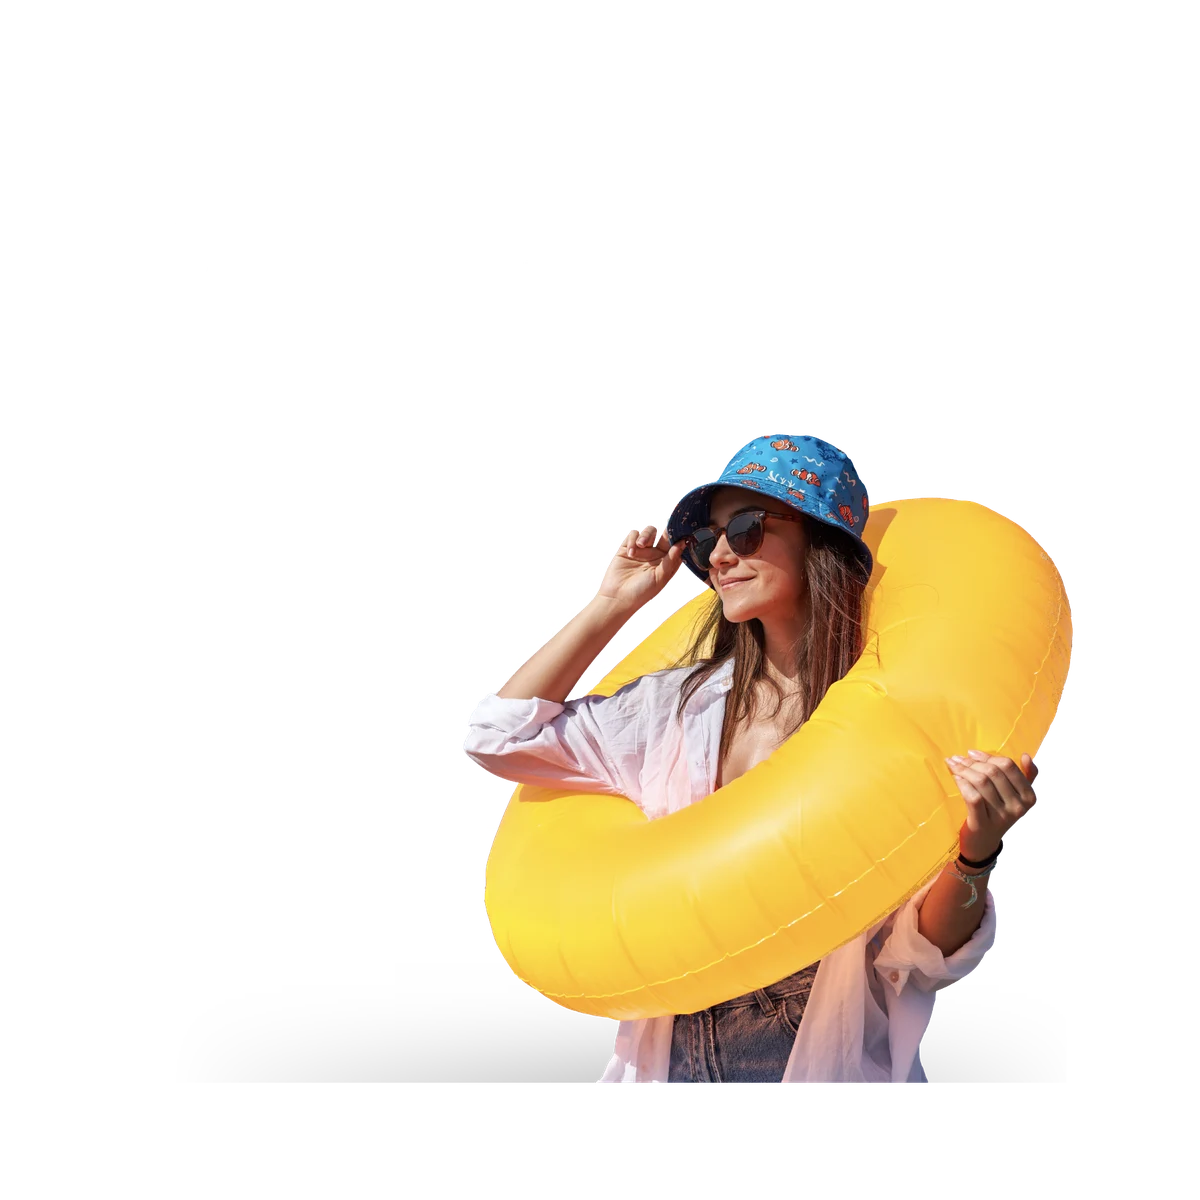 Frau mit gelbem Schwimmreifen und Daten im Hintergrund